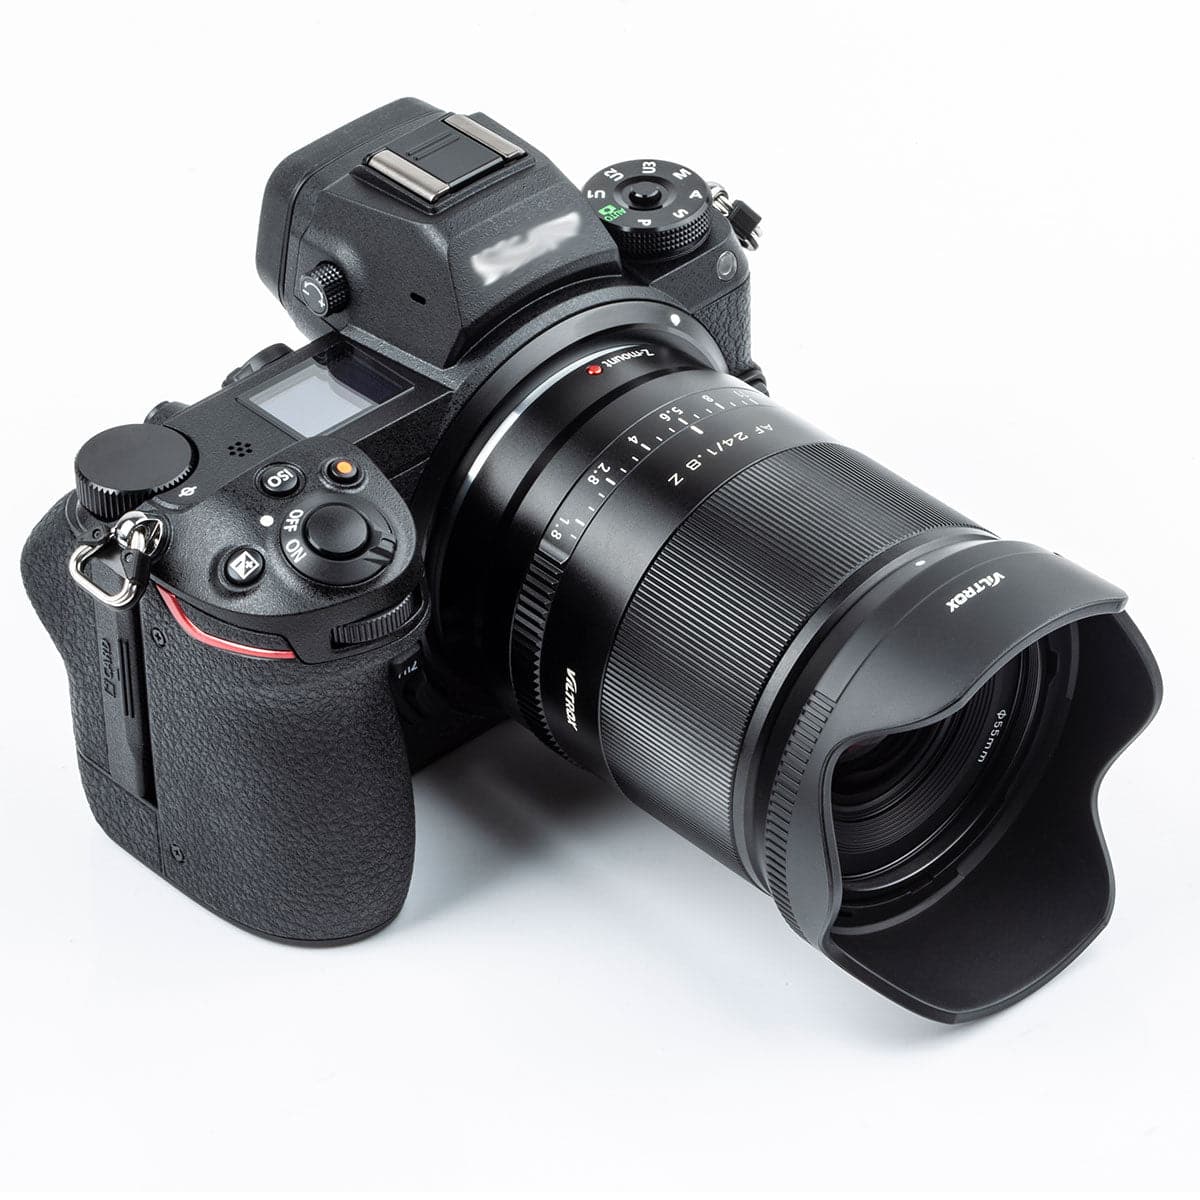 Viltrox AF 24mm F1.8 Full Frame Lens For Nikon Z-Mount – Viltrox Store